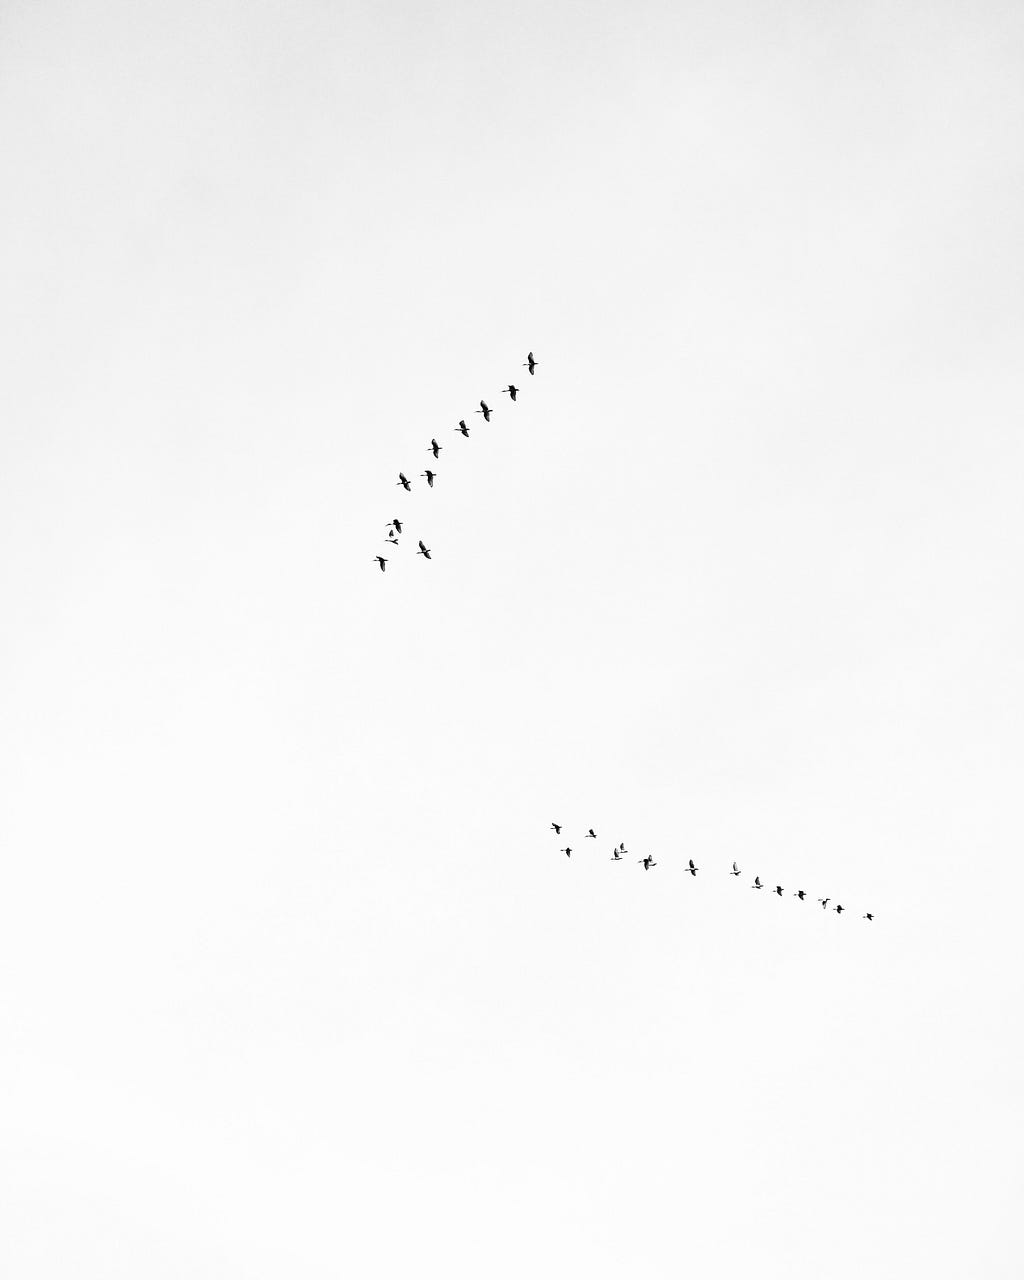 Birds fly across the sky